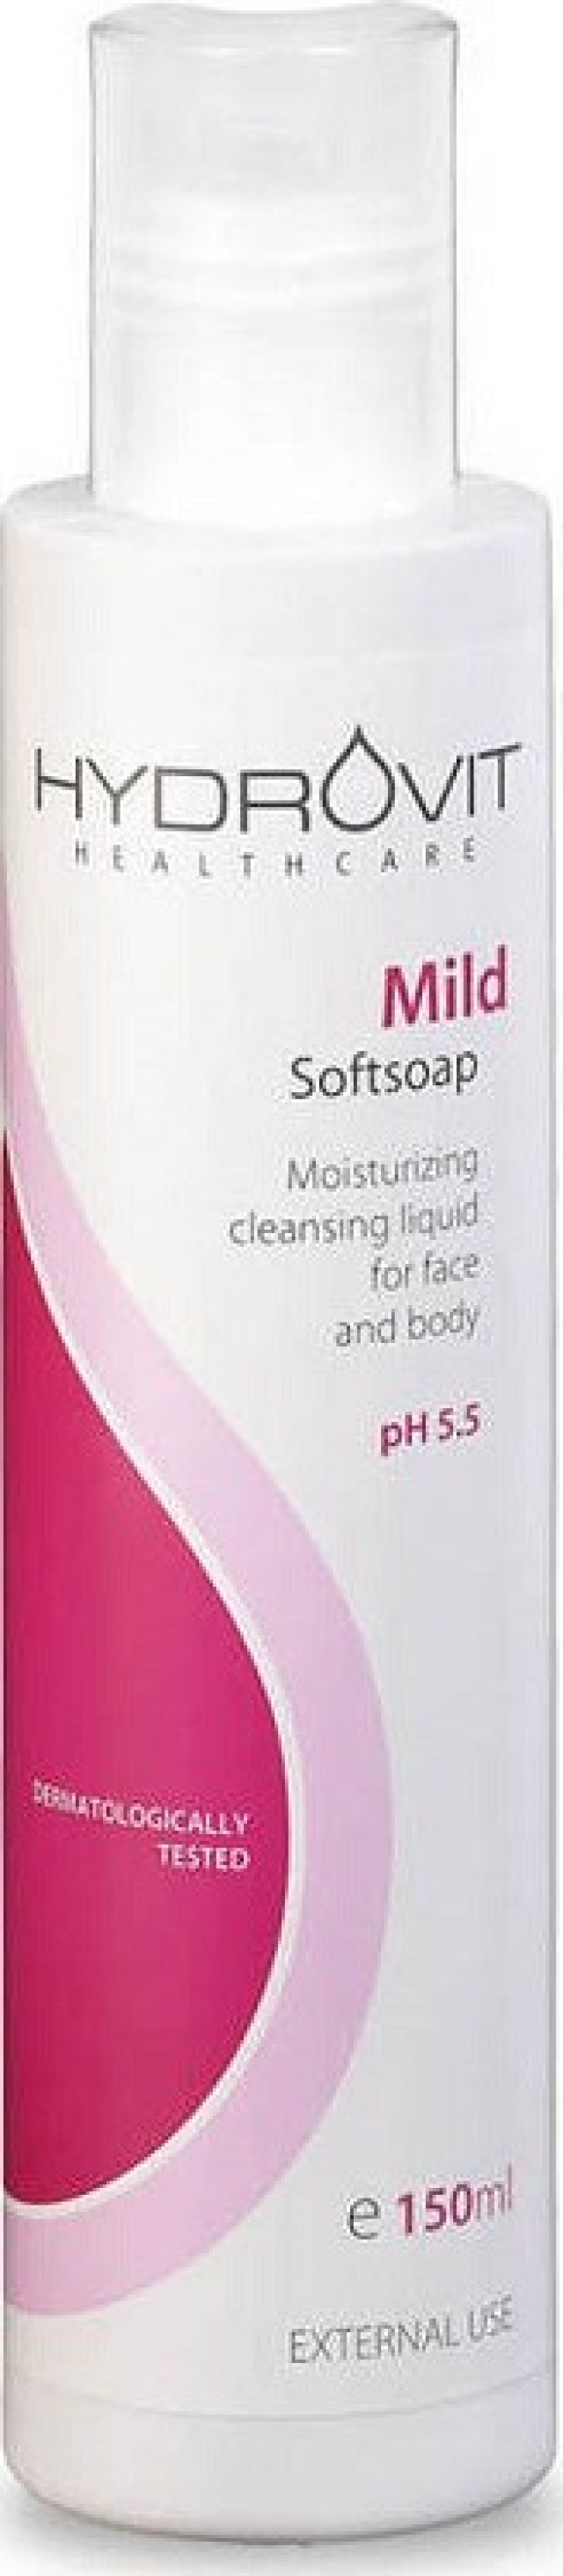 Hydrovit Mild Softsoap pH 5.5 Ήπιο Υγρό Καθαρισμού Προσώπου & Σώματος Με Ενυδατικές Ιδιότητες 150ml